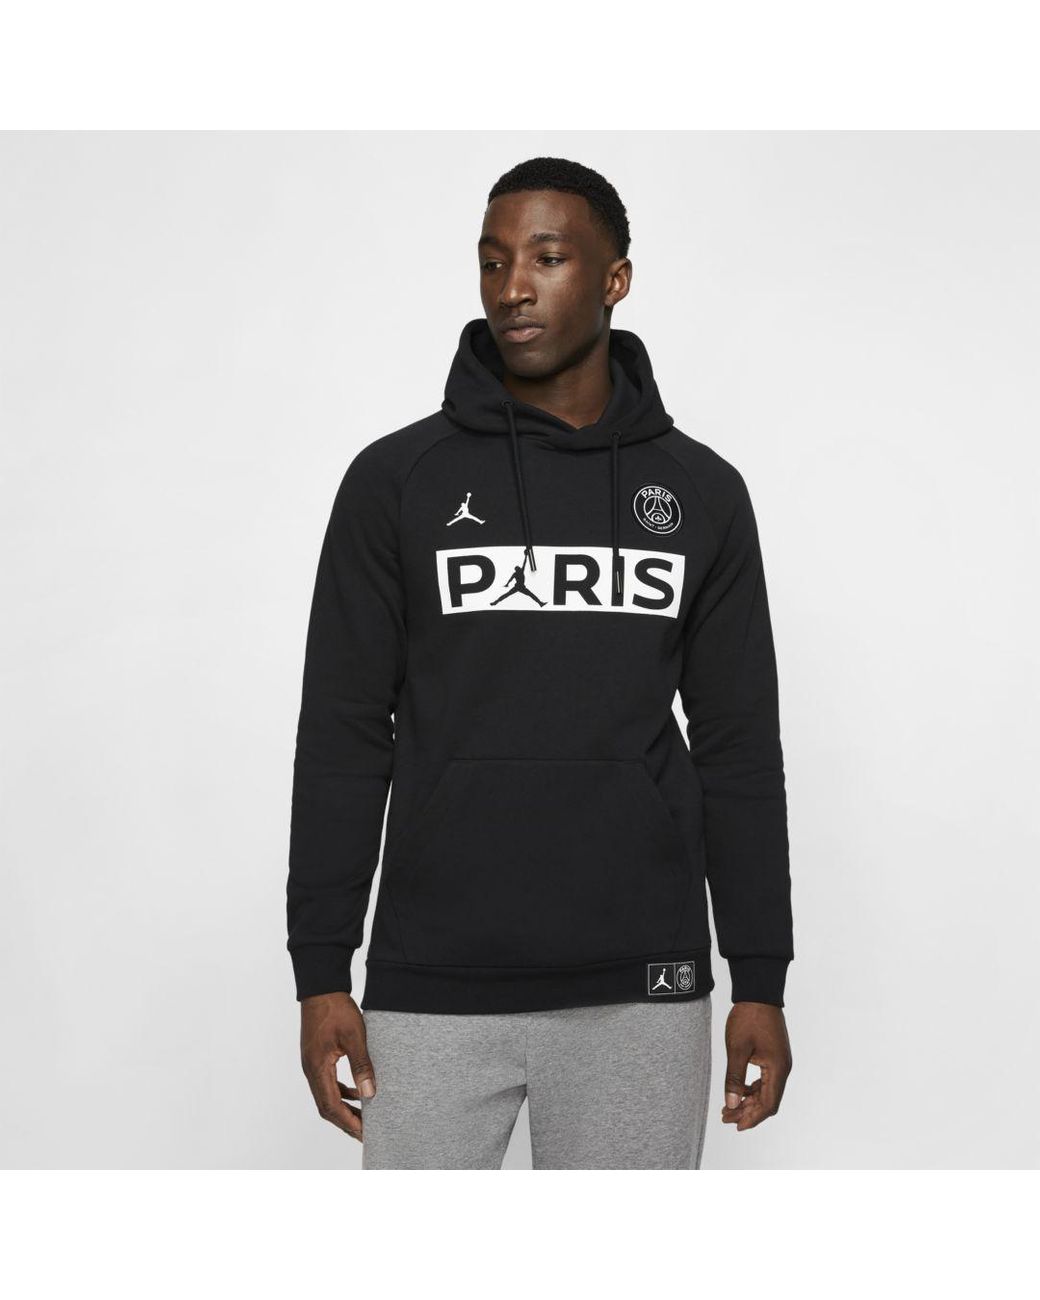 Nike Jordan Paris Saint-germain Fleece Pullover Hoodie in Black for Men ...